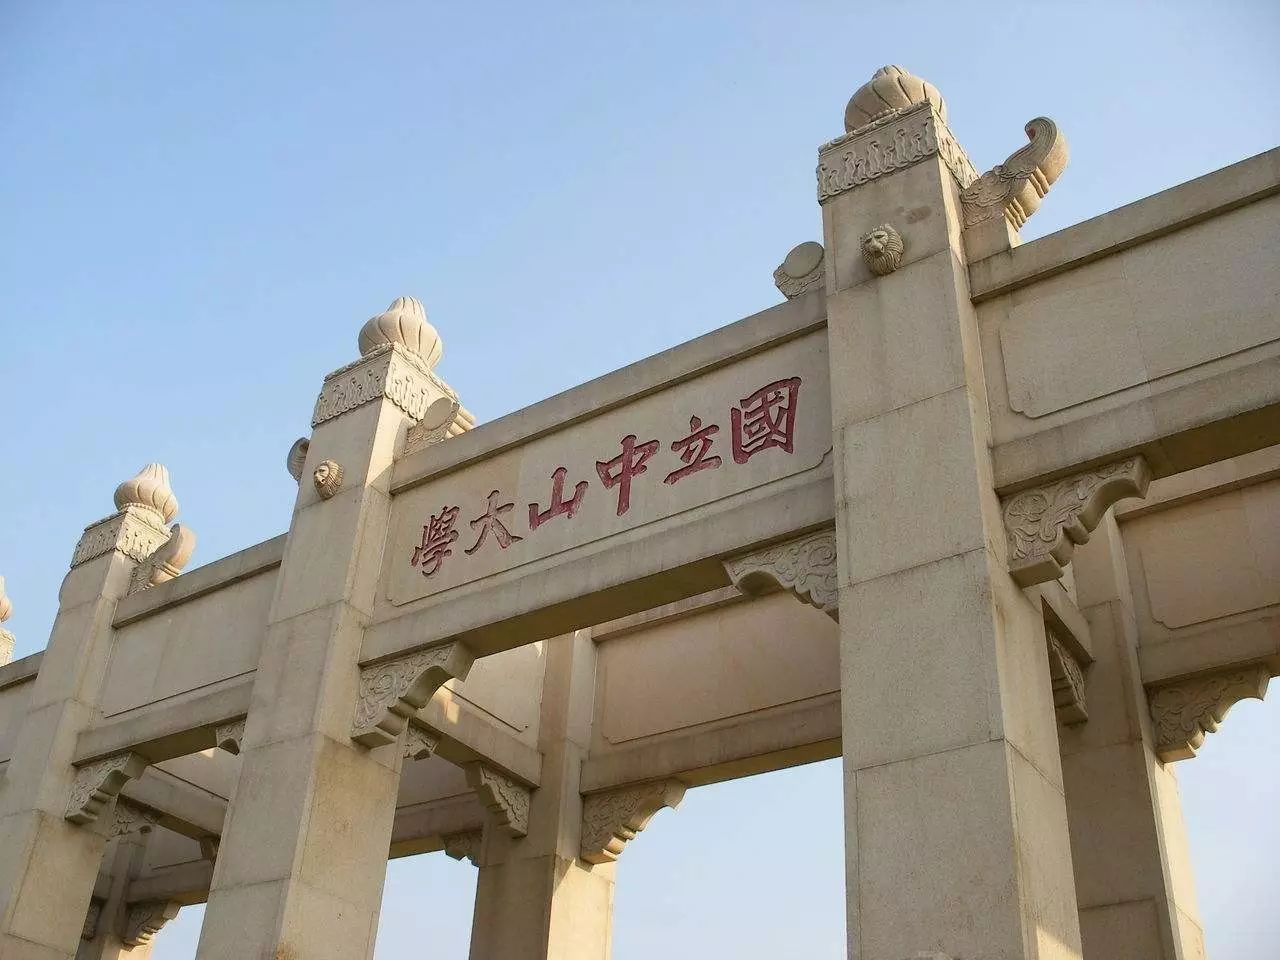 中山大学牌坊,简称"中大牌坊",位于中大海珠校区(即南校区)北门,滨江